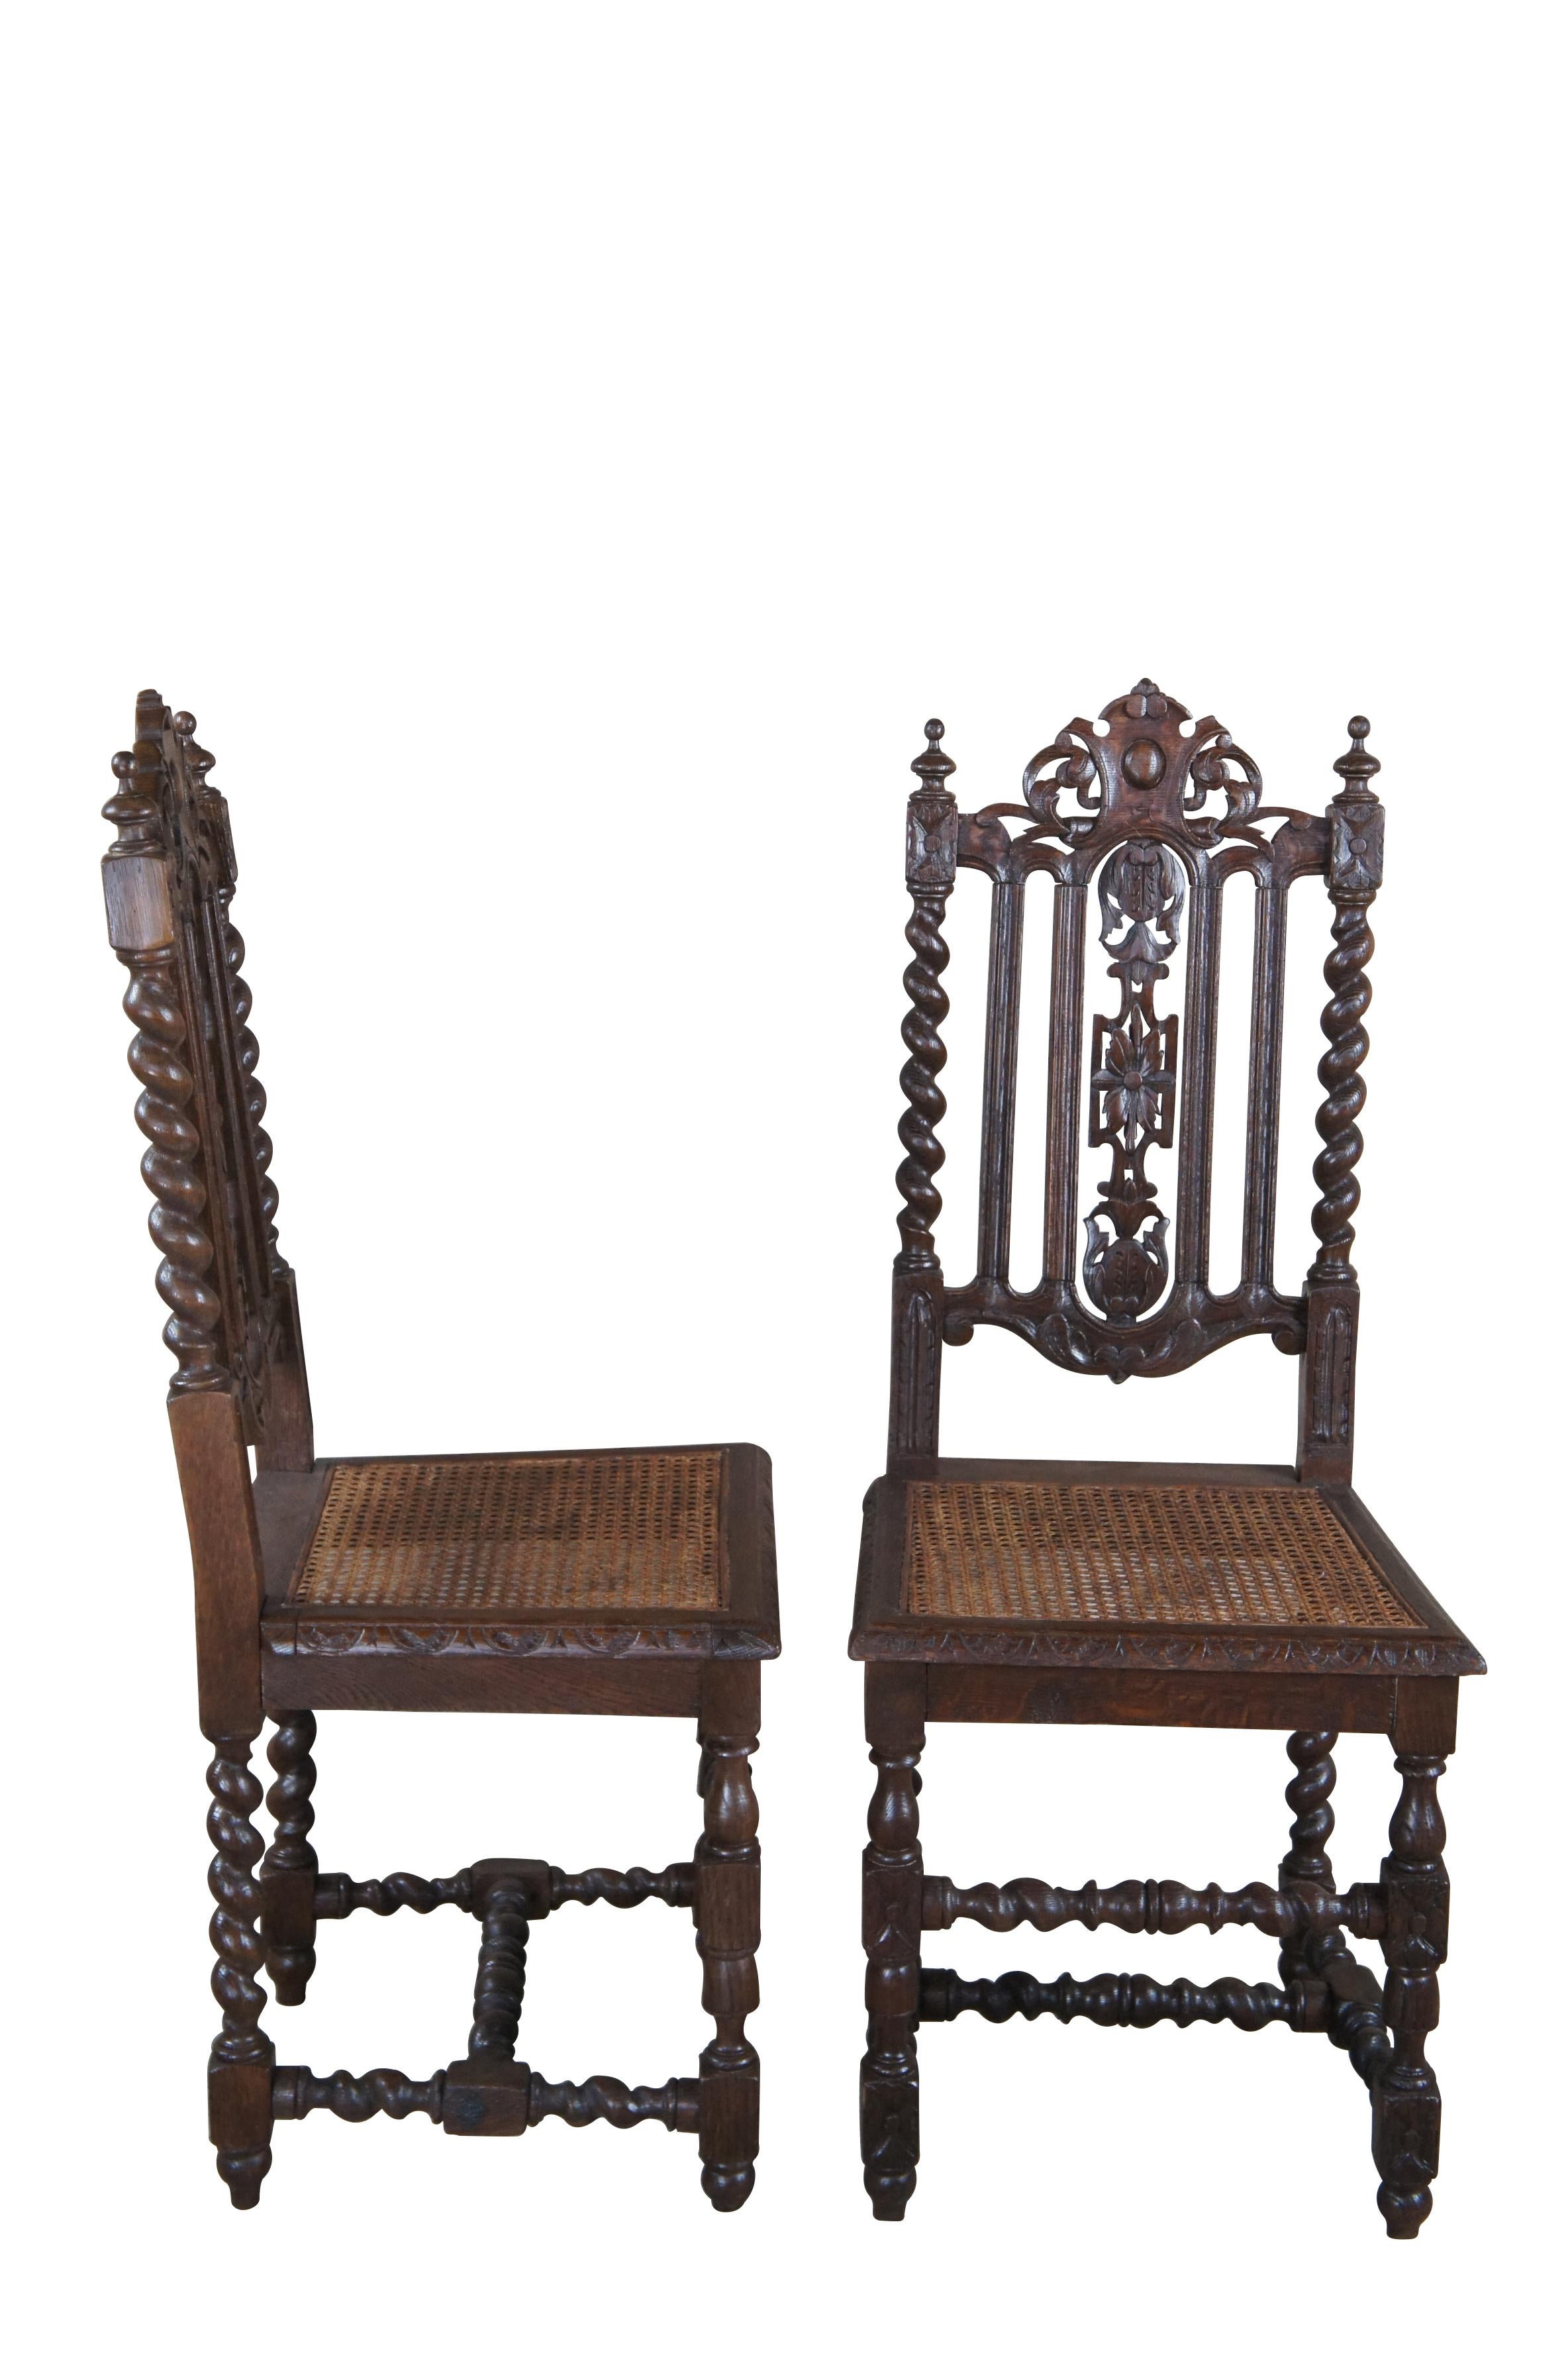 Satz von 3 antiken französischen Renaissance-Esszimmerstühlen.  Wunderschön gearbeitete Eichenholzrahmen mit barockem Schnitzwerk, durchbrochenen Rückseiten und Gerstendrehstützen.  Die Sitze aus geflochtenem Schilfrohr werden von einem